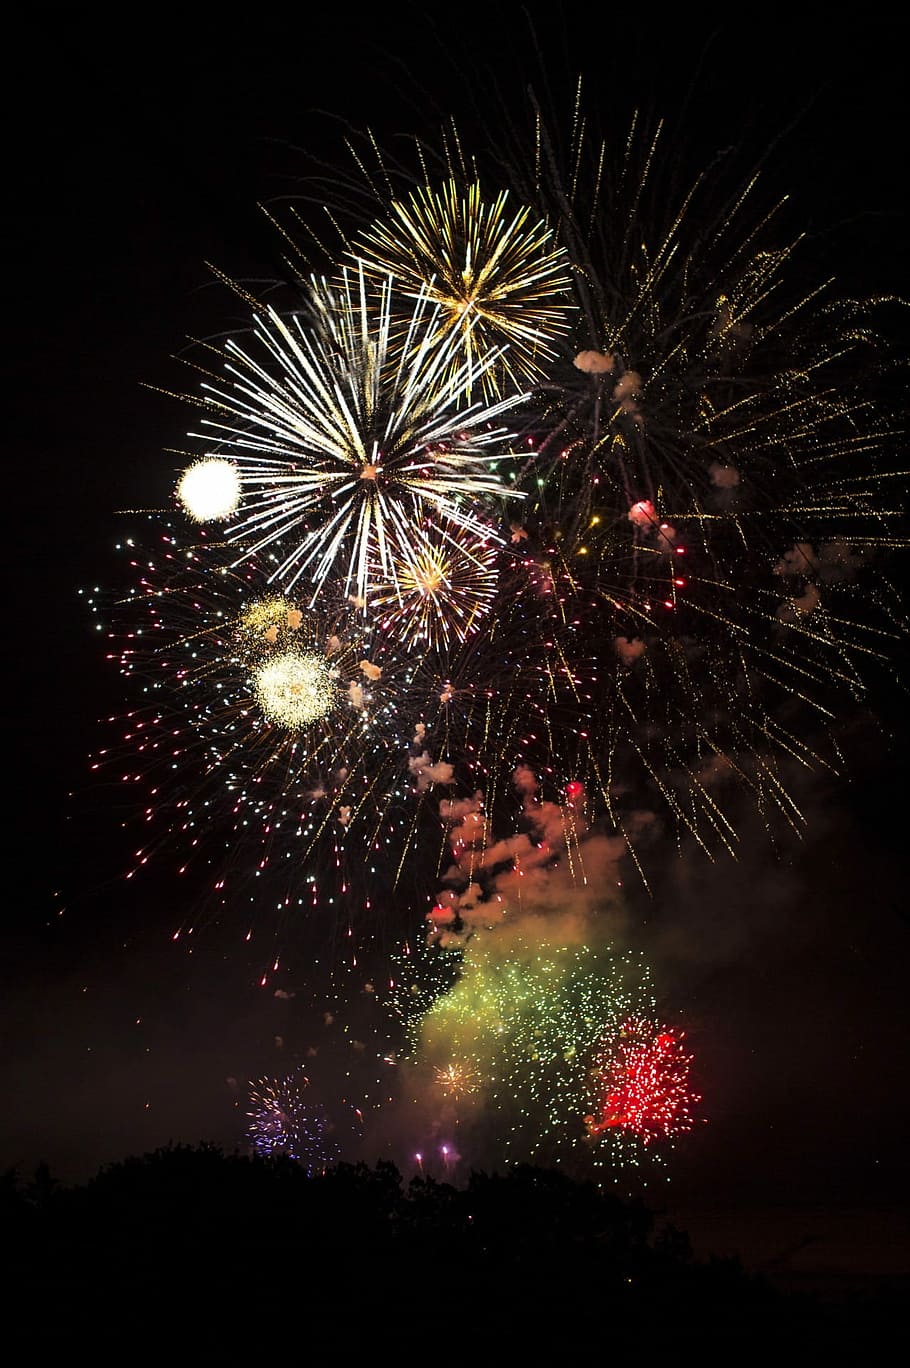 exhibición de fuegos artificiales, noche, adelante, fuegos artificiales, petardos, julio, celebración, fiesta de año nuevo, explosión, fuegos artificiales - objeto hecho por el hombre